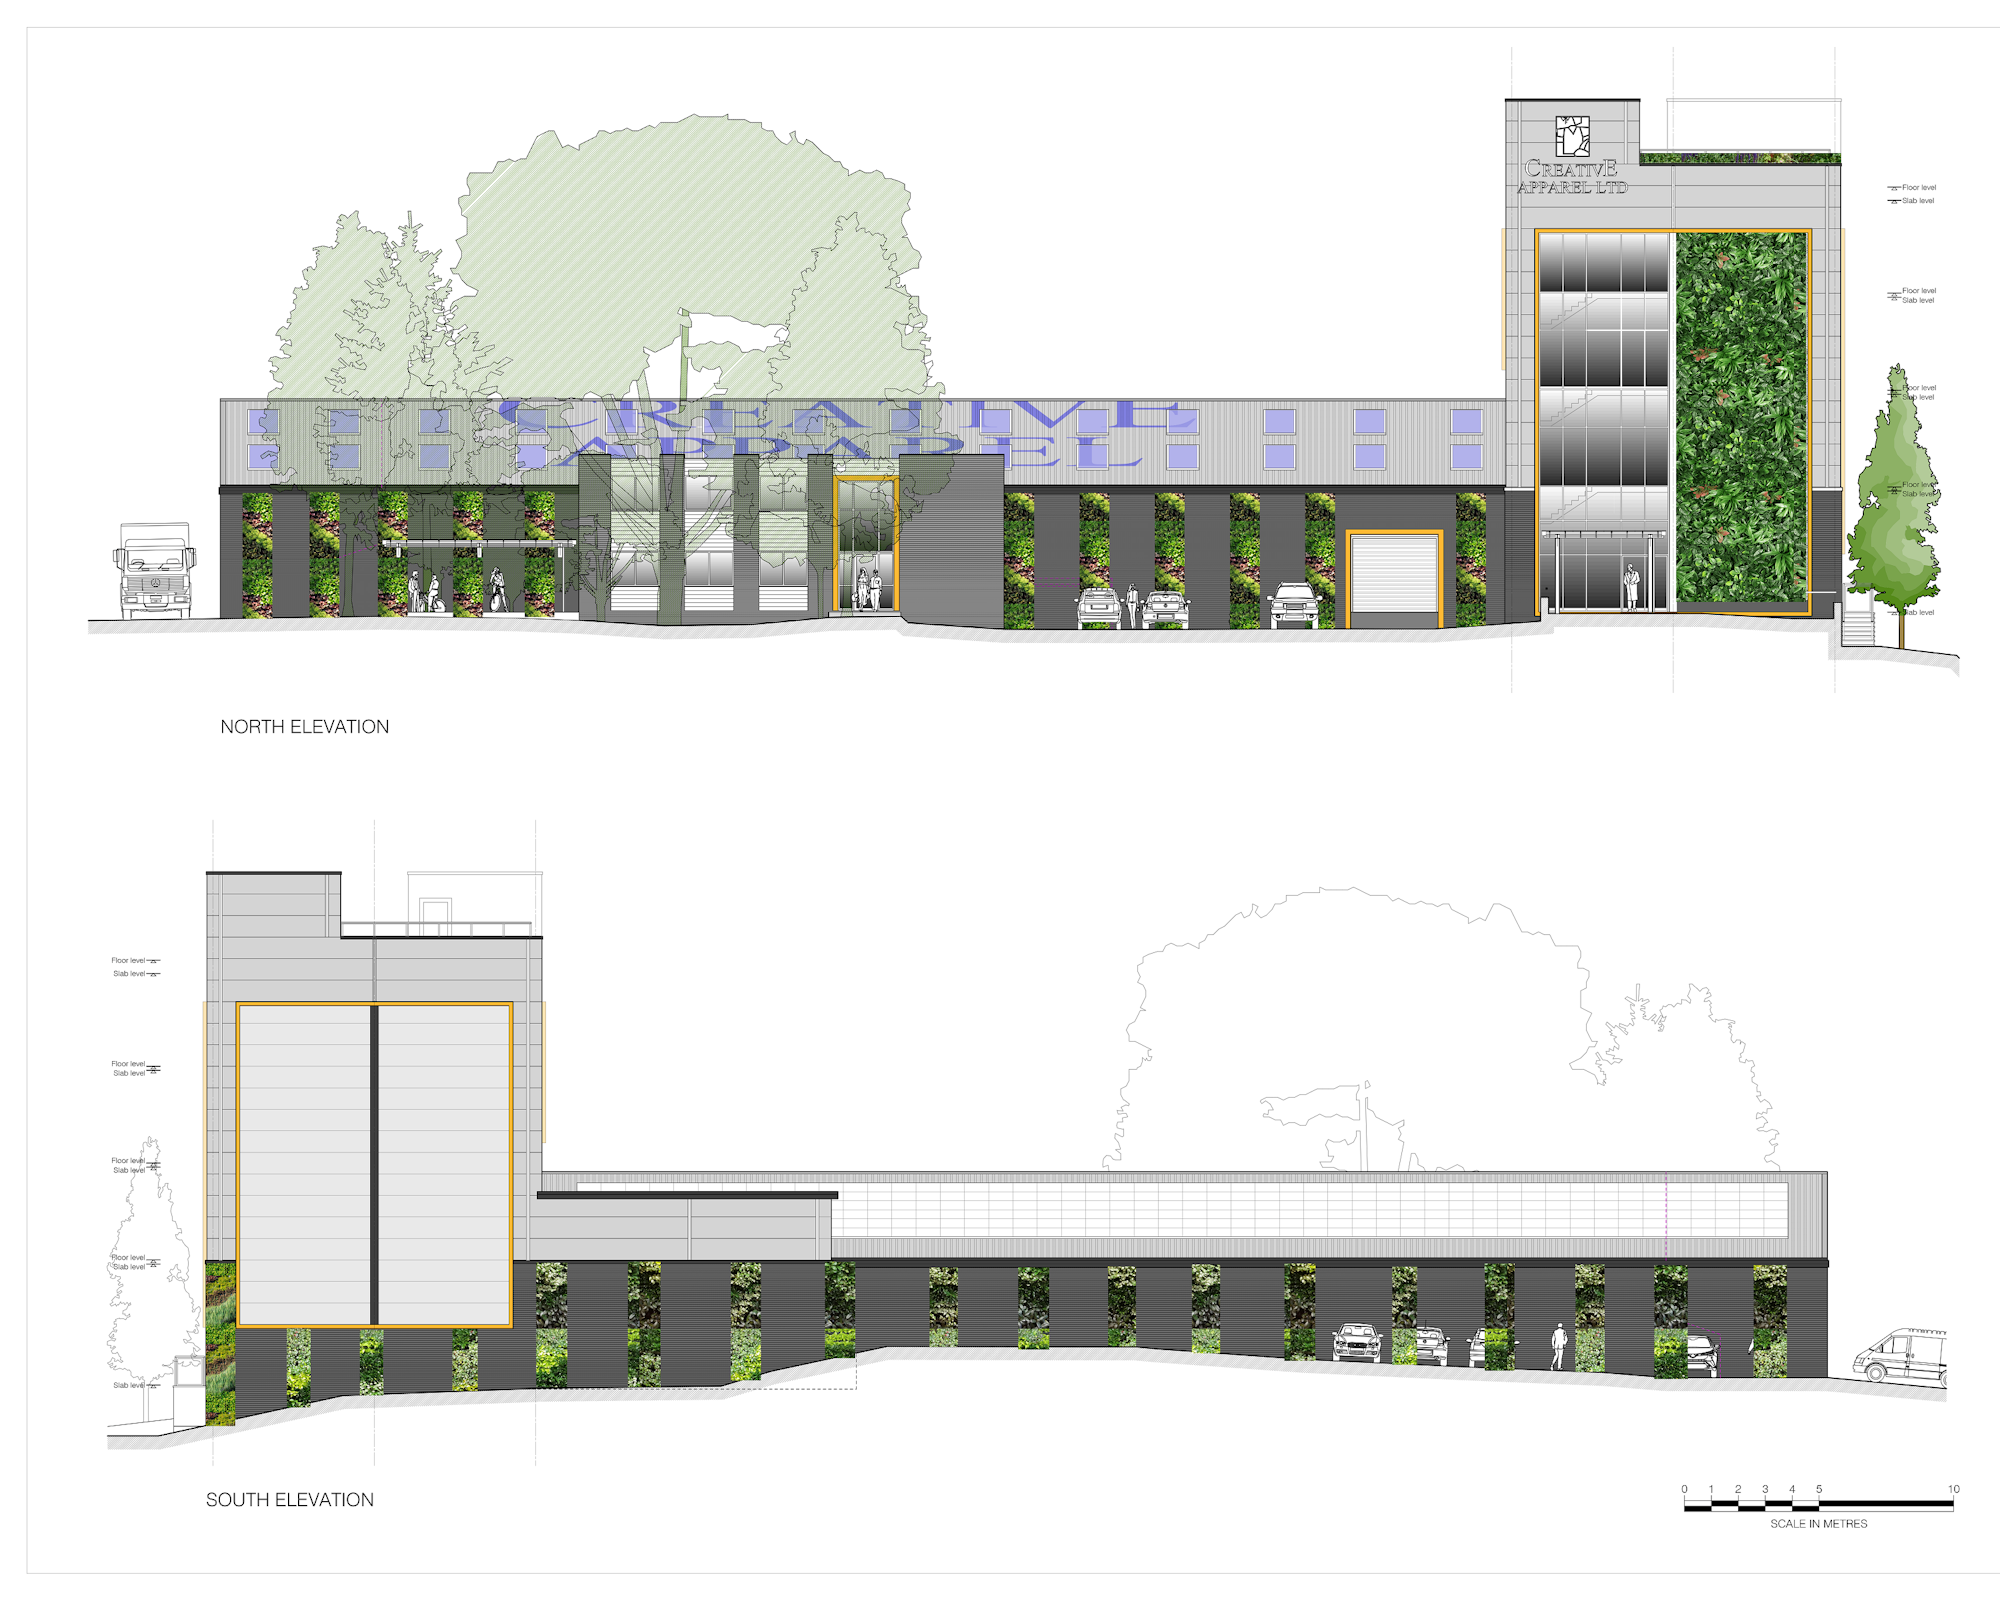 Seitenansicht der Pläne für ein großes Geschäftsgebäude mit grüner Infrastruktur einschließlich grüner Wände und Bäumen zur Verbesserung der Artenvielfalt